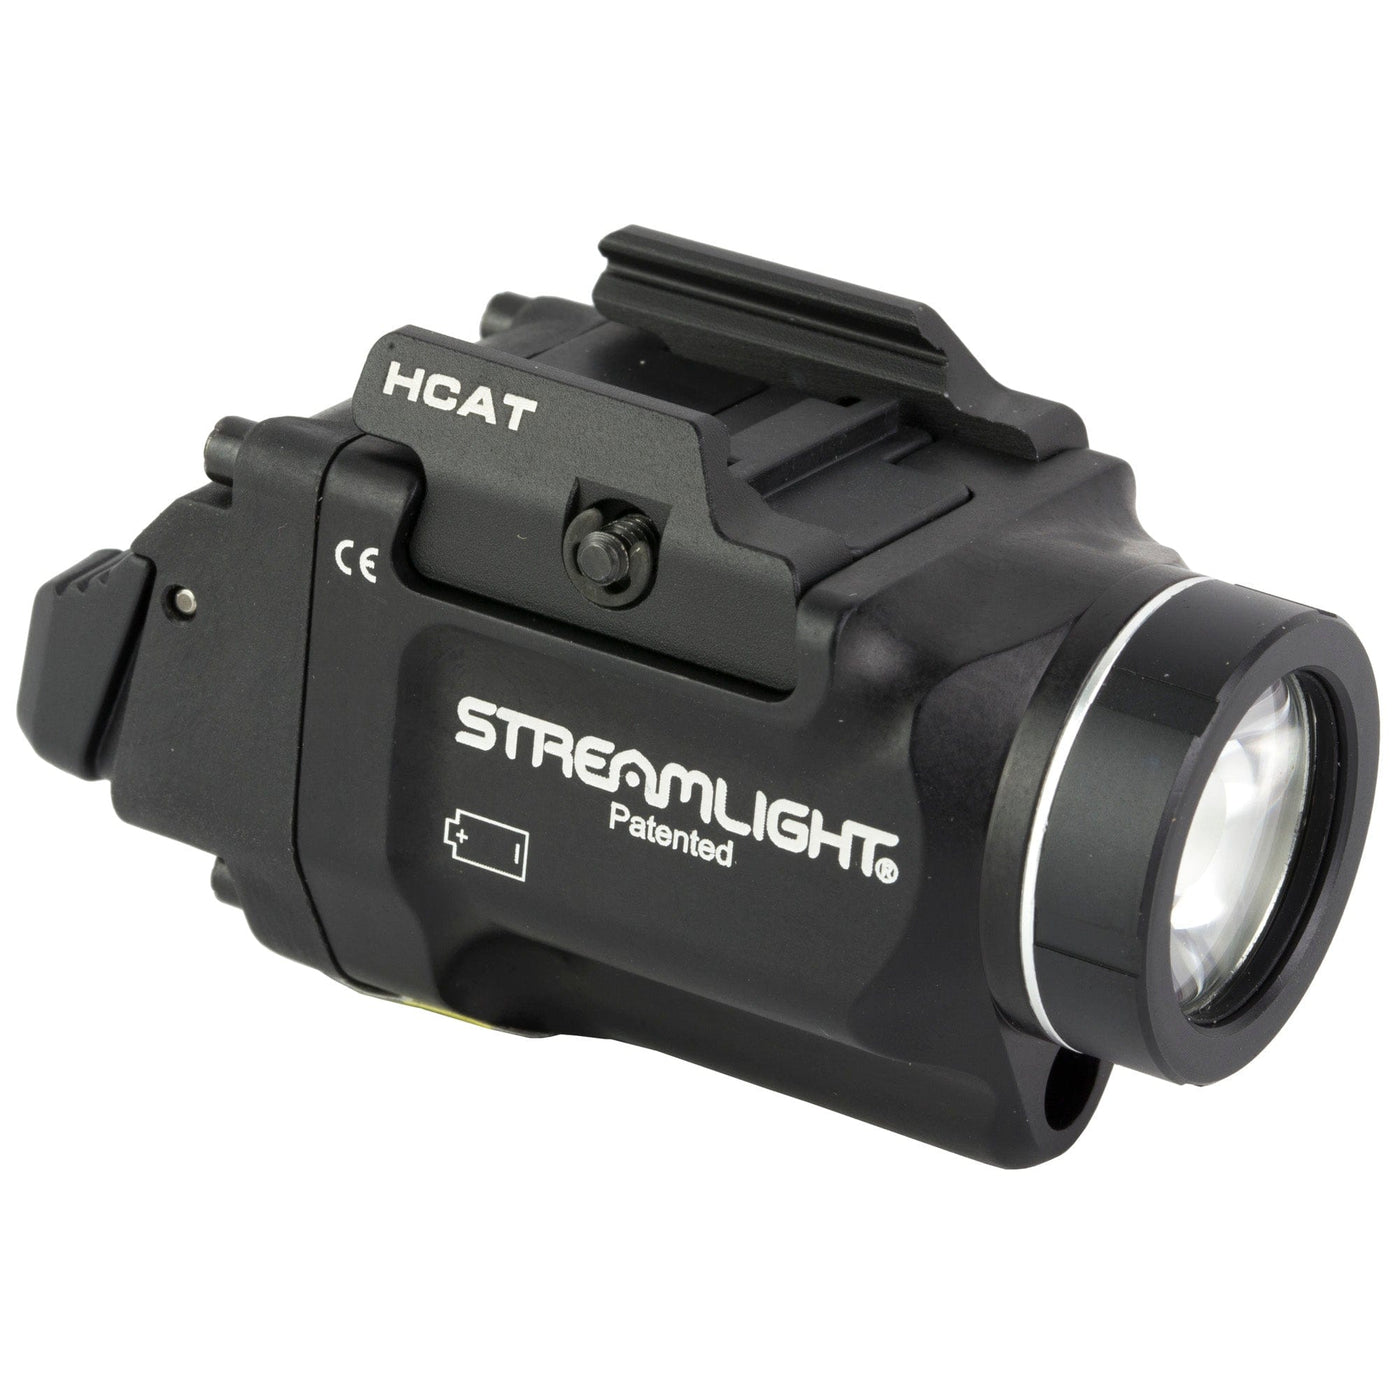 Streamlight Strmlght Tlr-8 Sub Sa Hellcat Blk Firearm Accessories